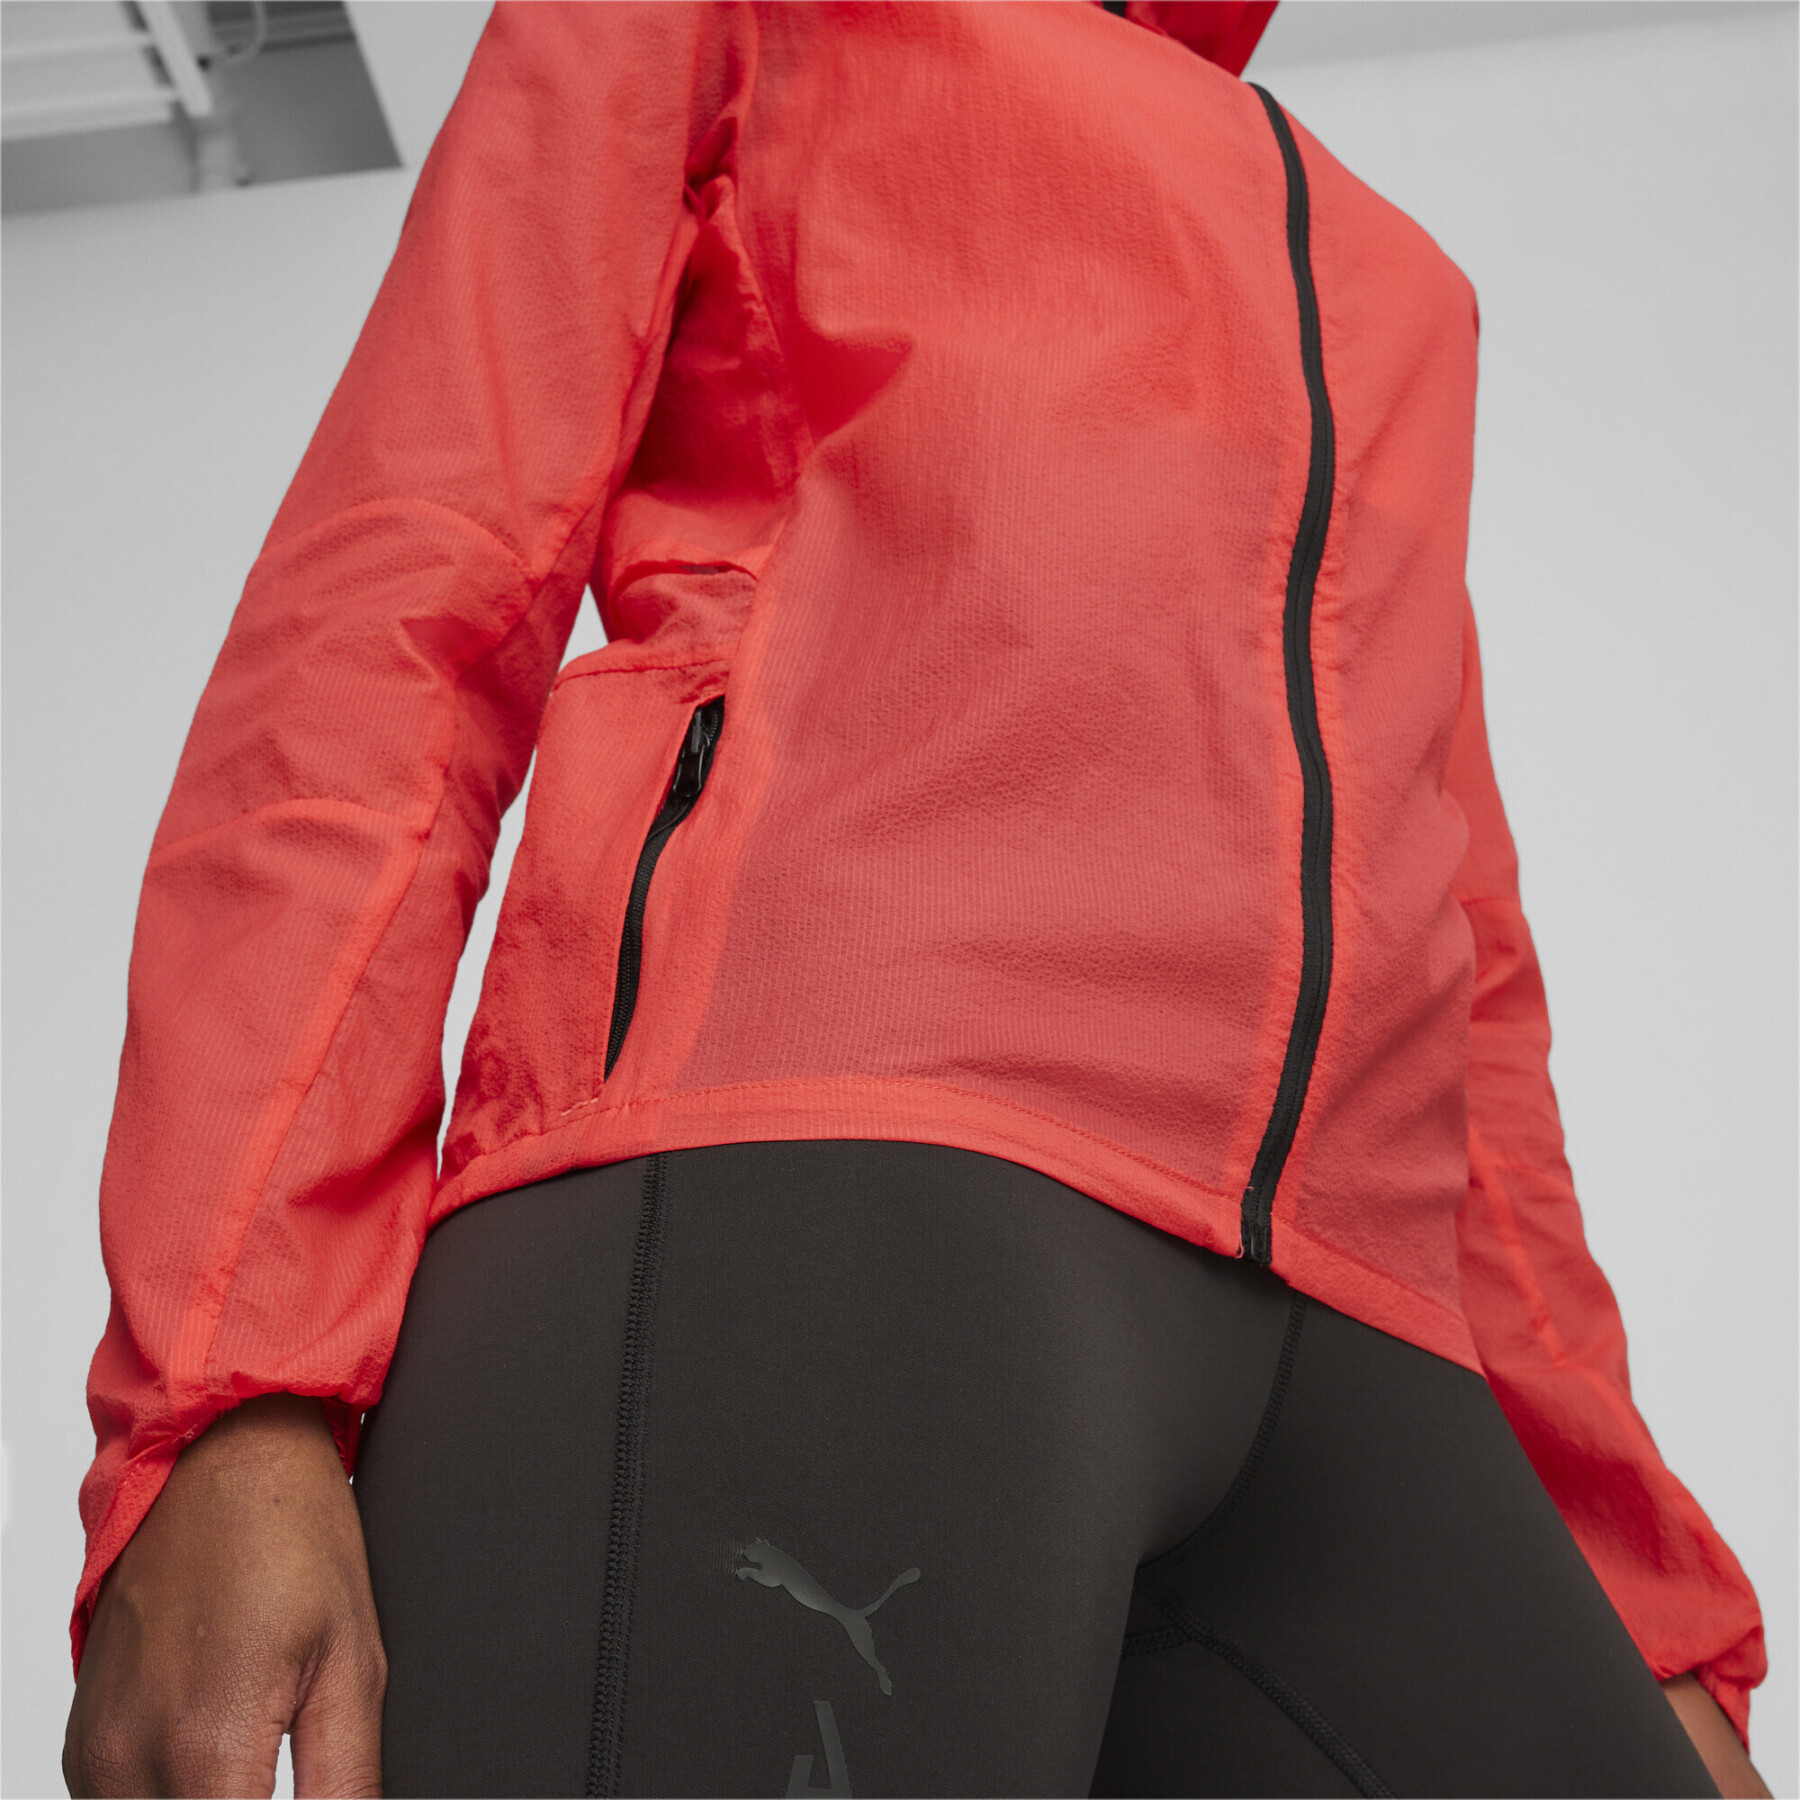 Women's hooded waterproof jacket Puma Ultra Seasons